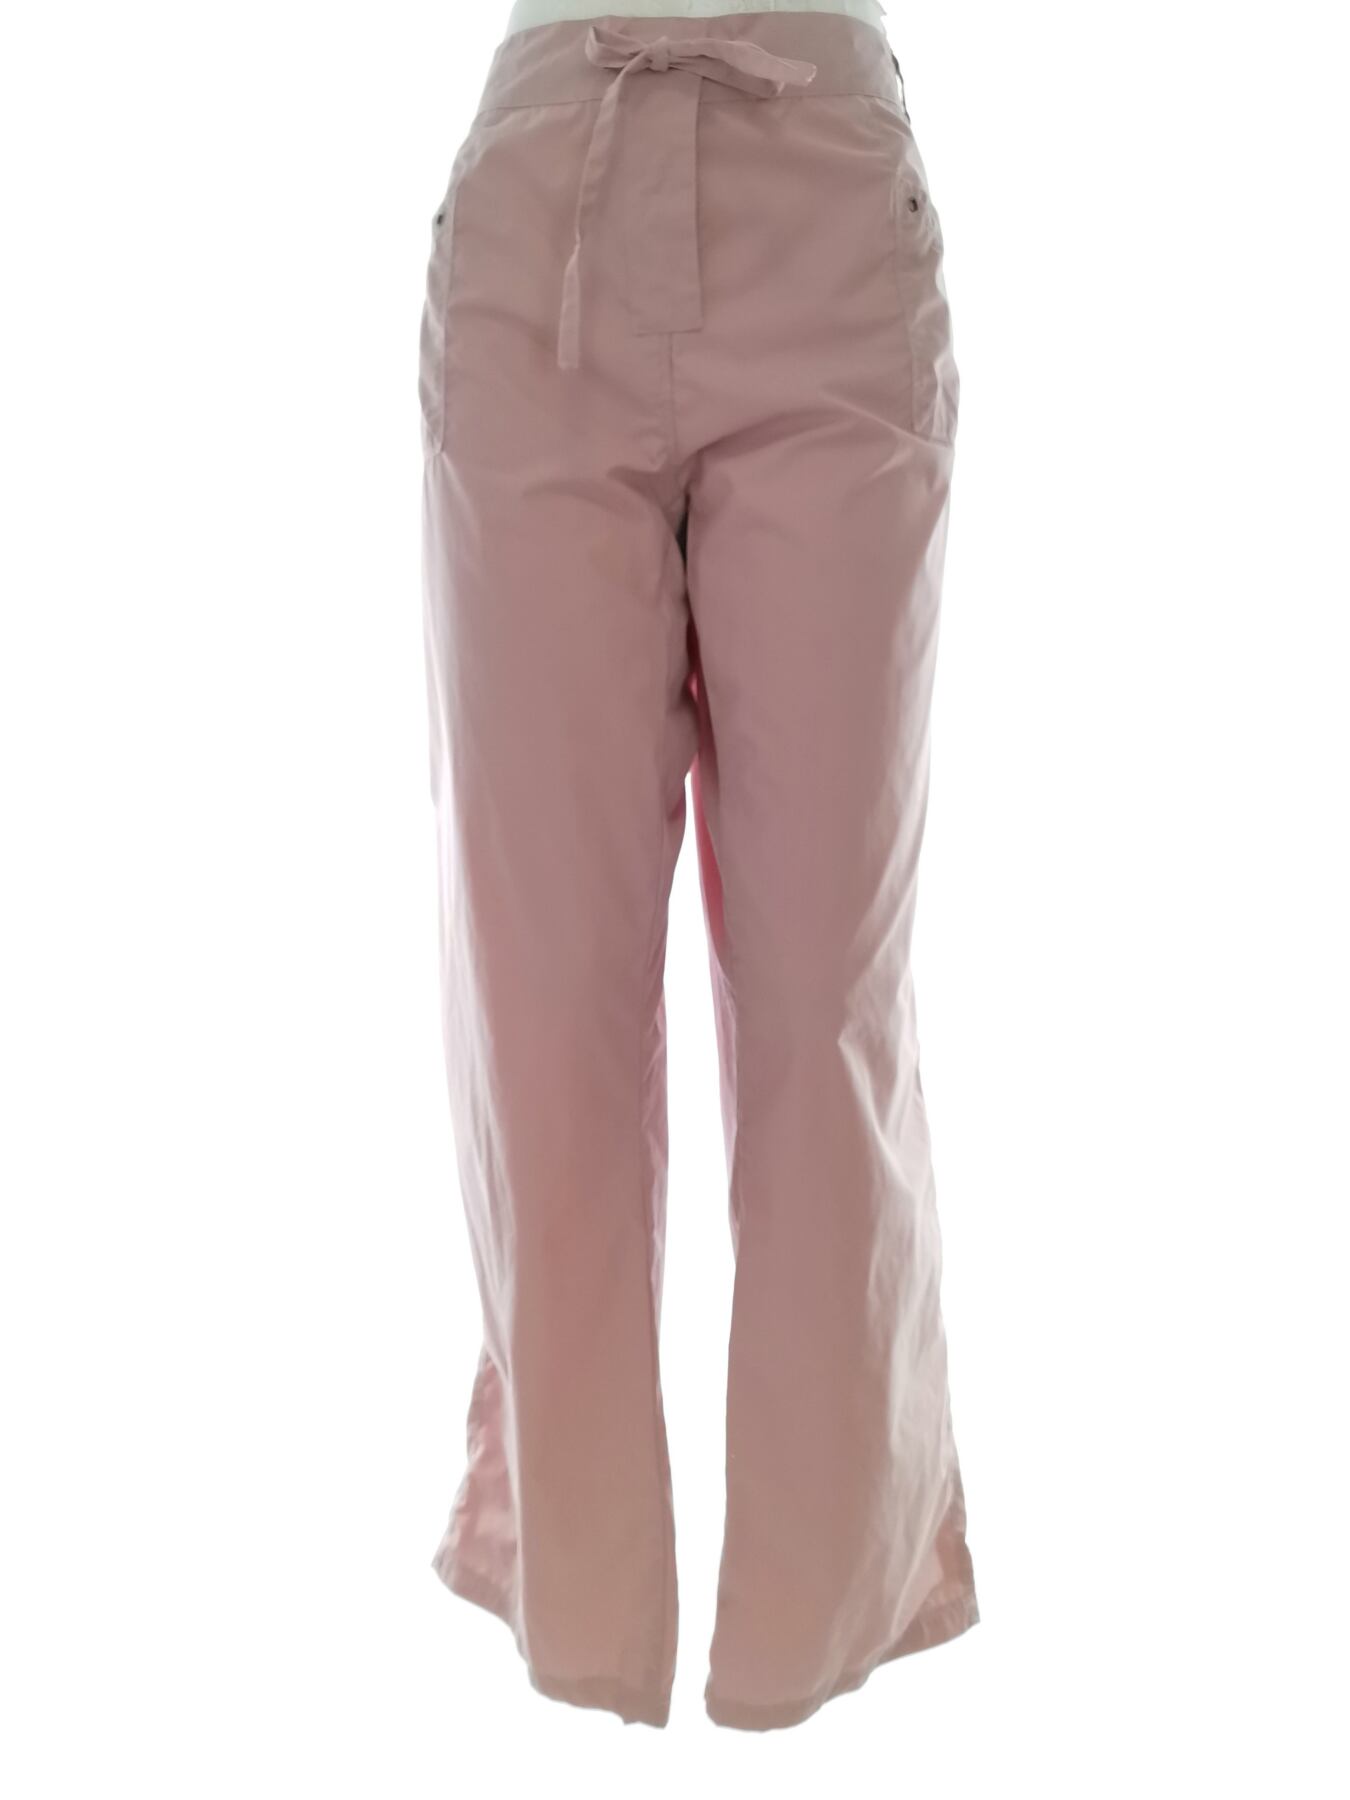 E-vie Rozmiar 16 (48) Kolor Różowy Spodnie Casual